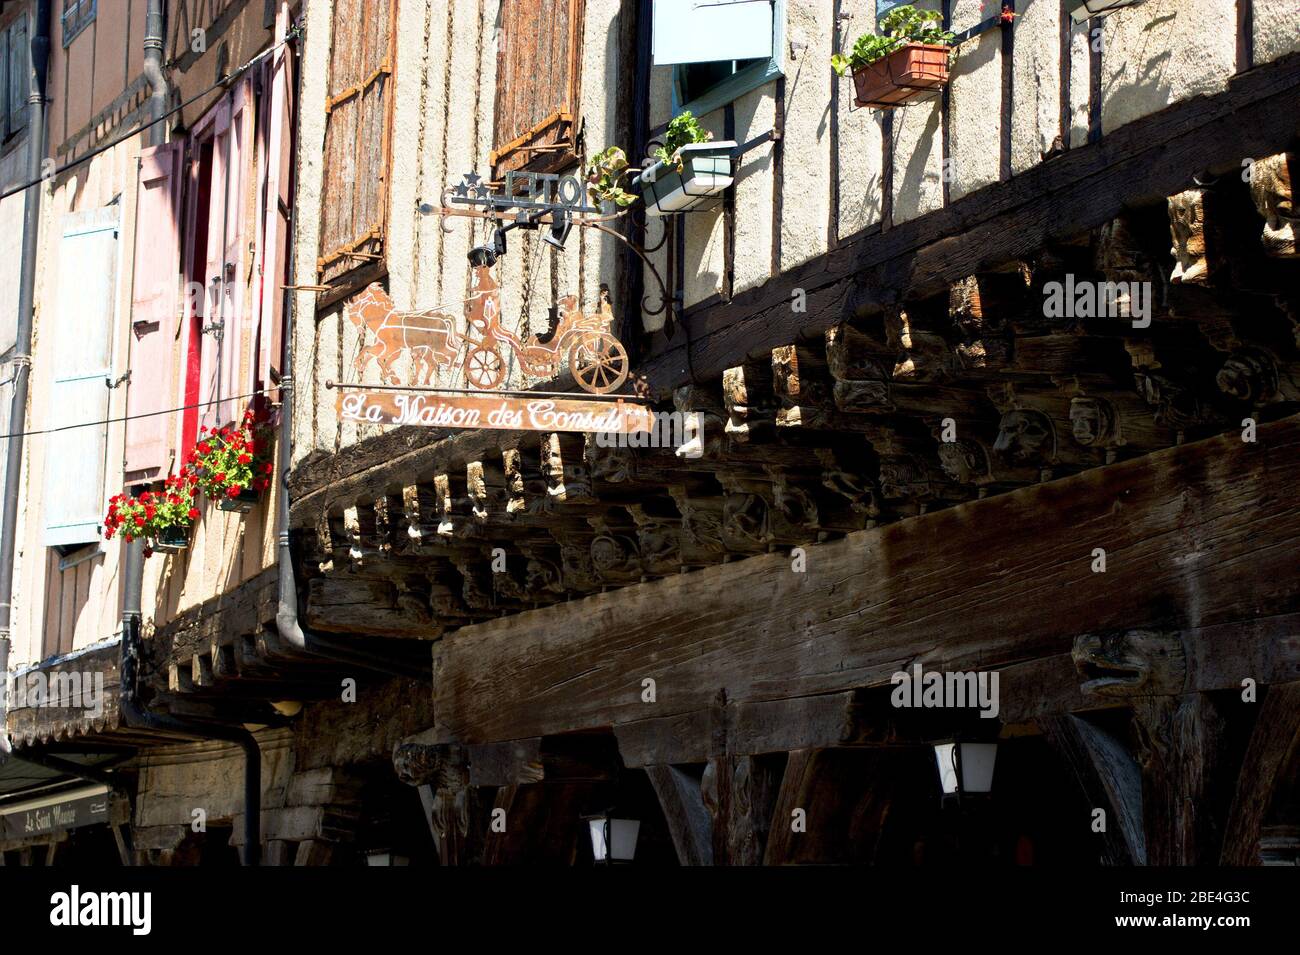 Farben und façades mittelalterlicher Gebäude in der kleinen Stadt Mirepoix in der südfranzösischen Region Ariege Stockfoto